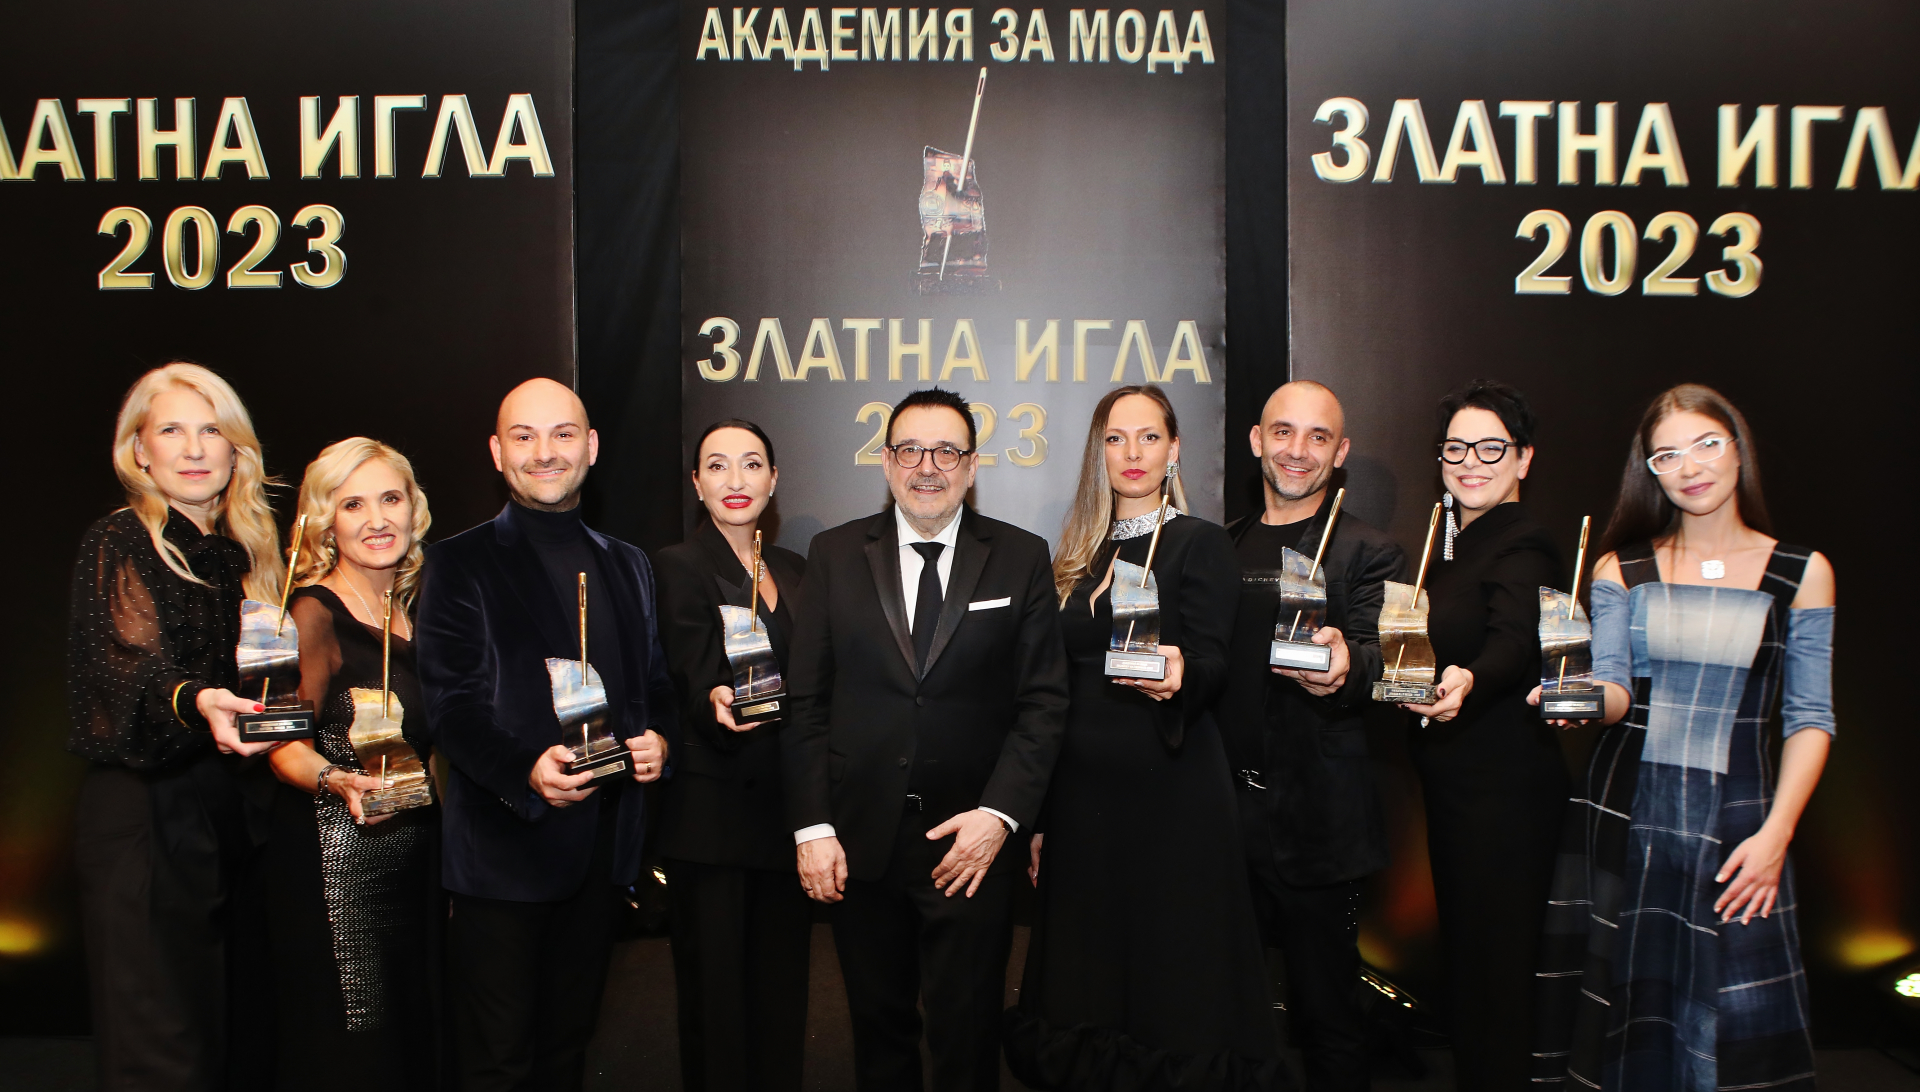 Връчиха най-престижните награди за мода в България "Златна игла 2023" СНИМКИ